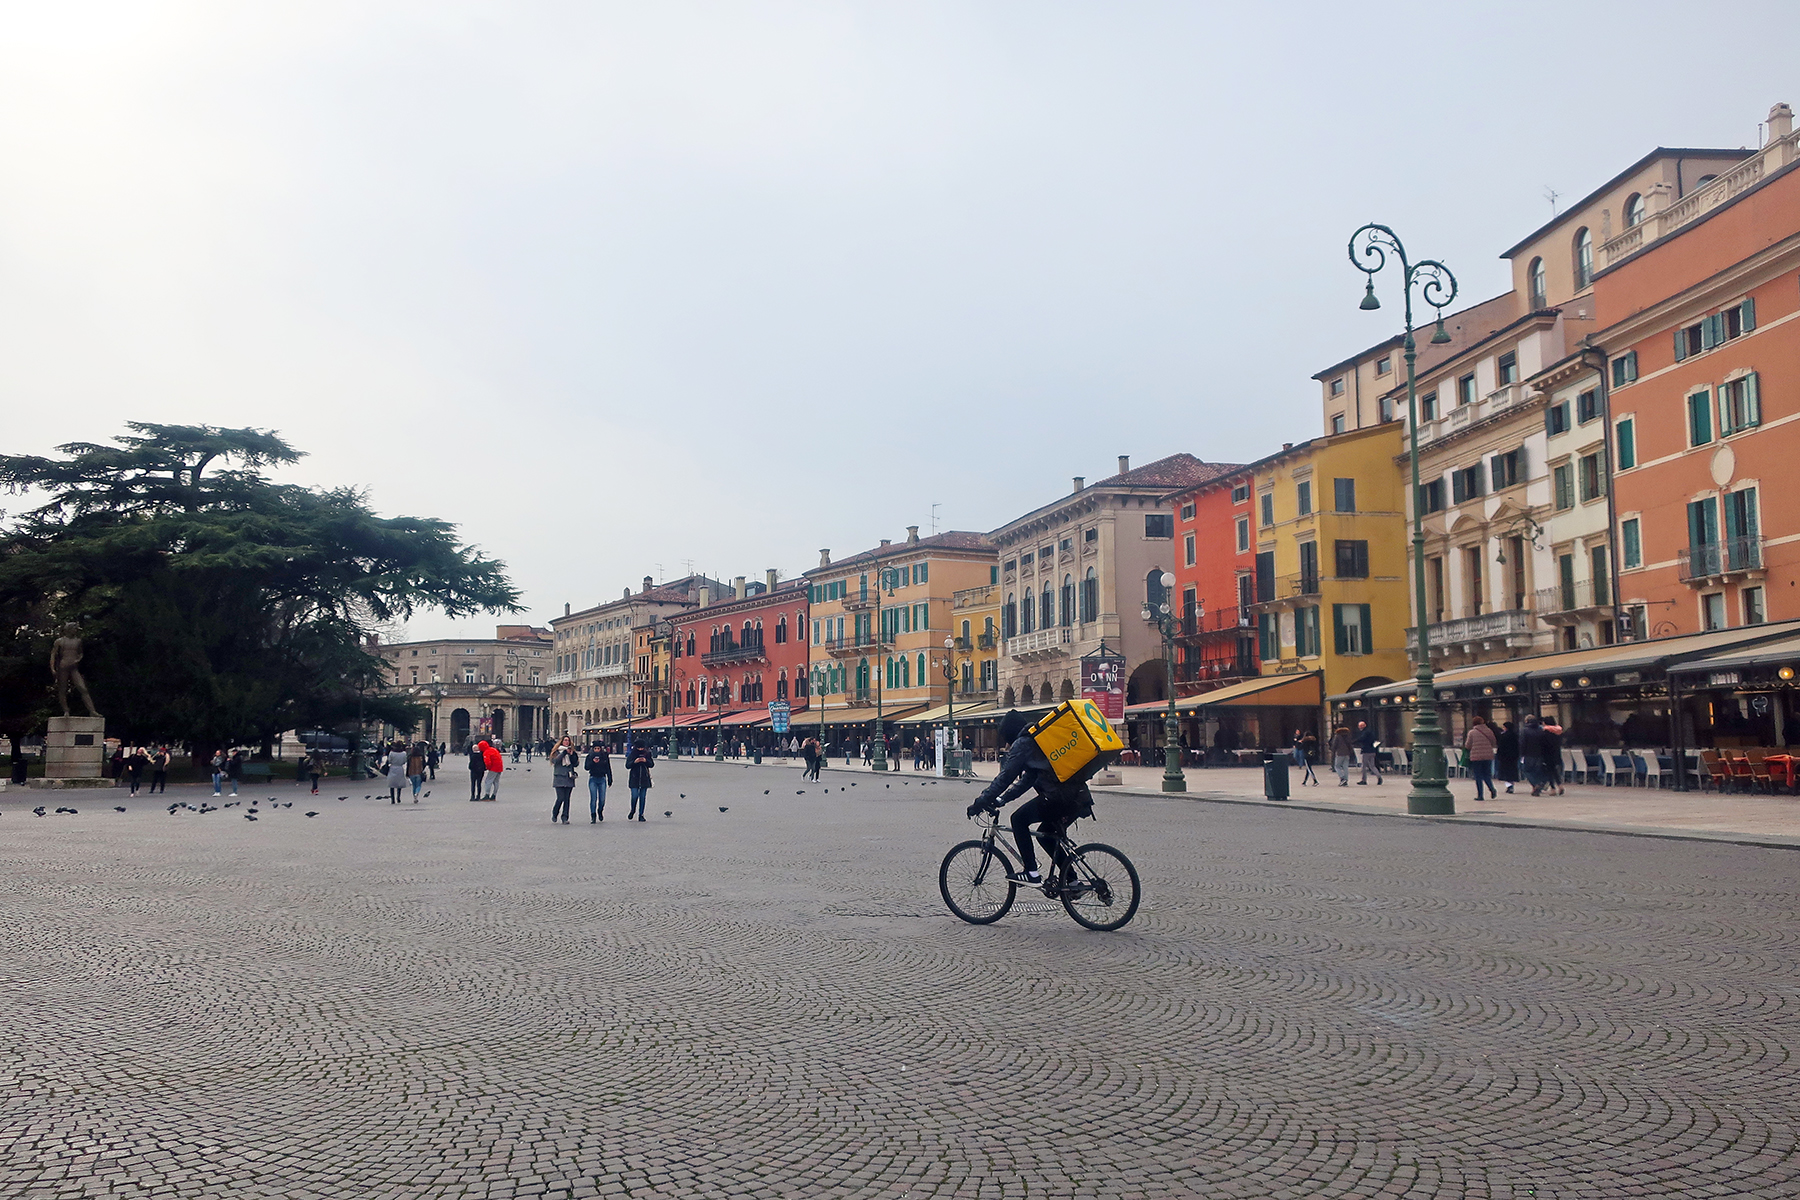 Verona verzaubert nicht nur Verliebte: 13 Tipps für Verona